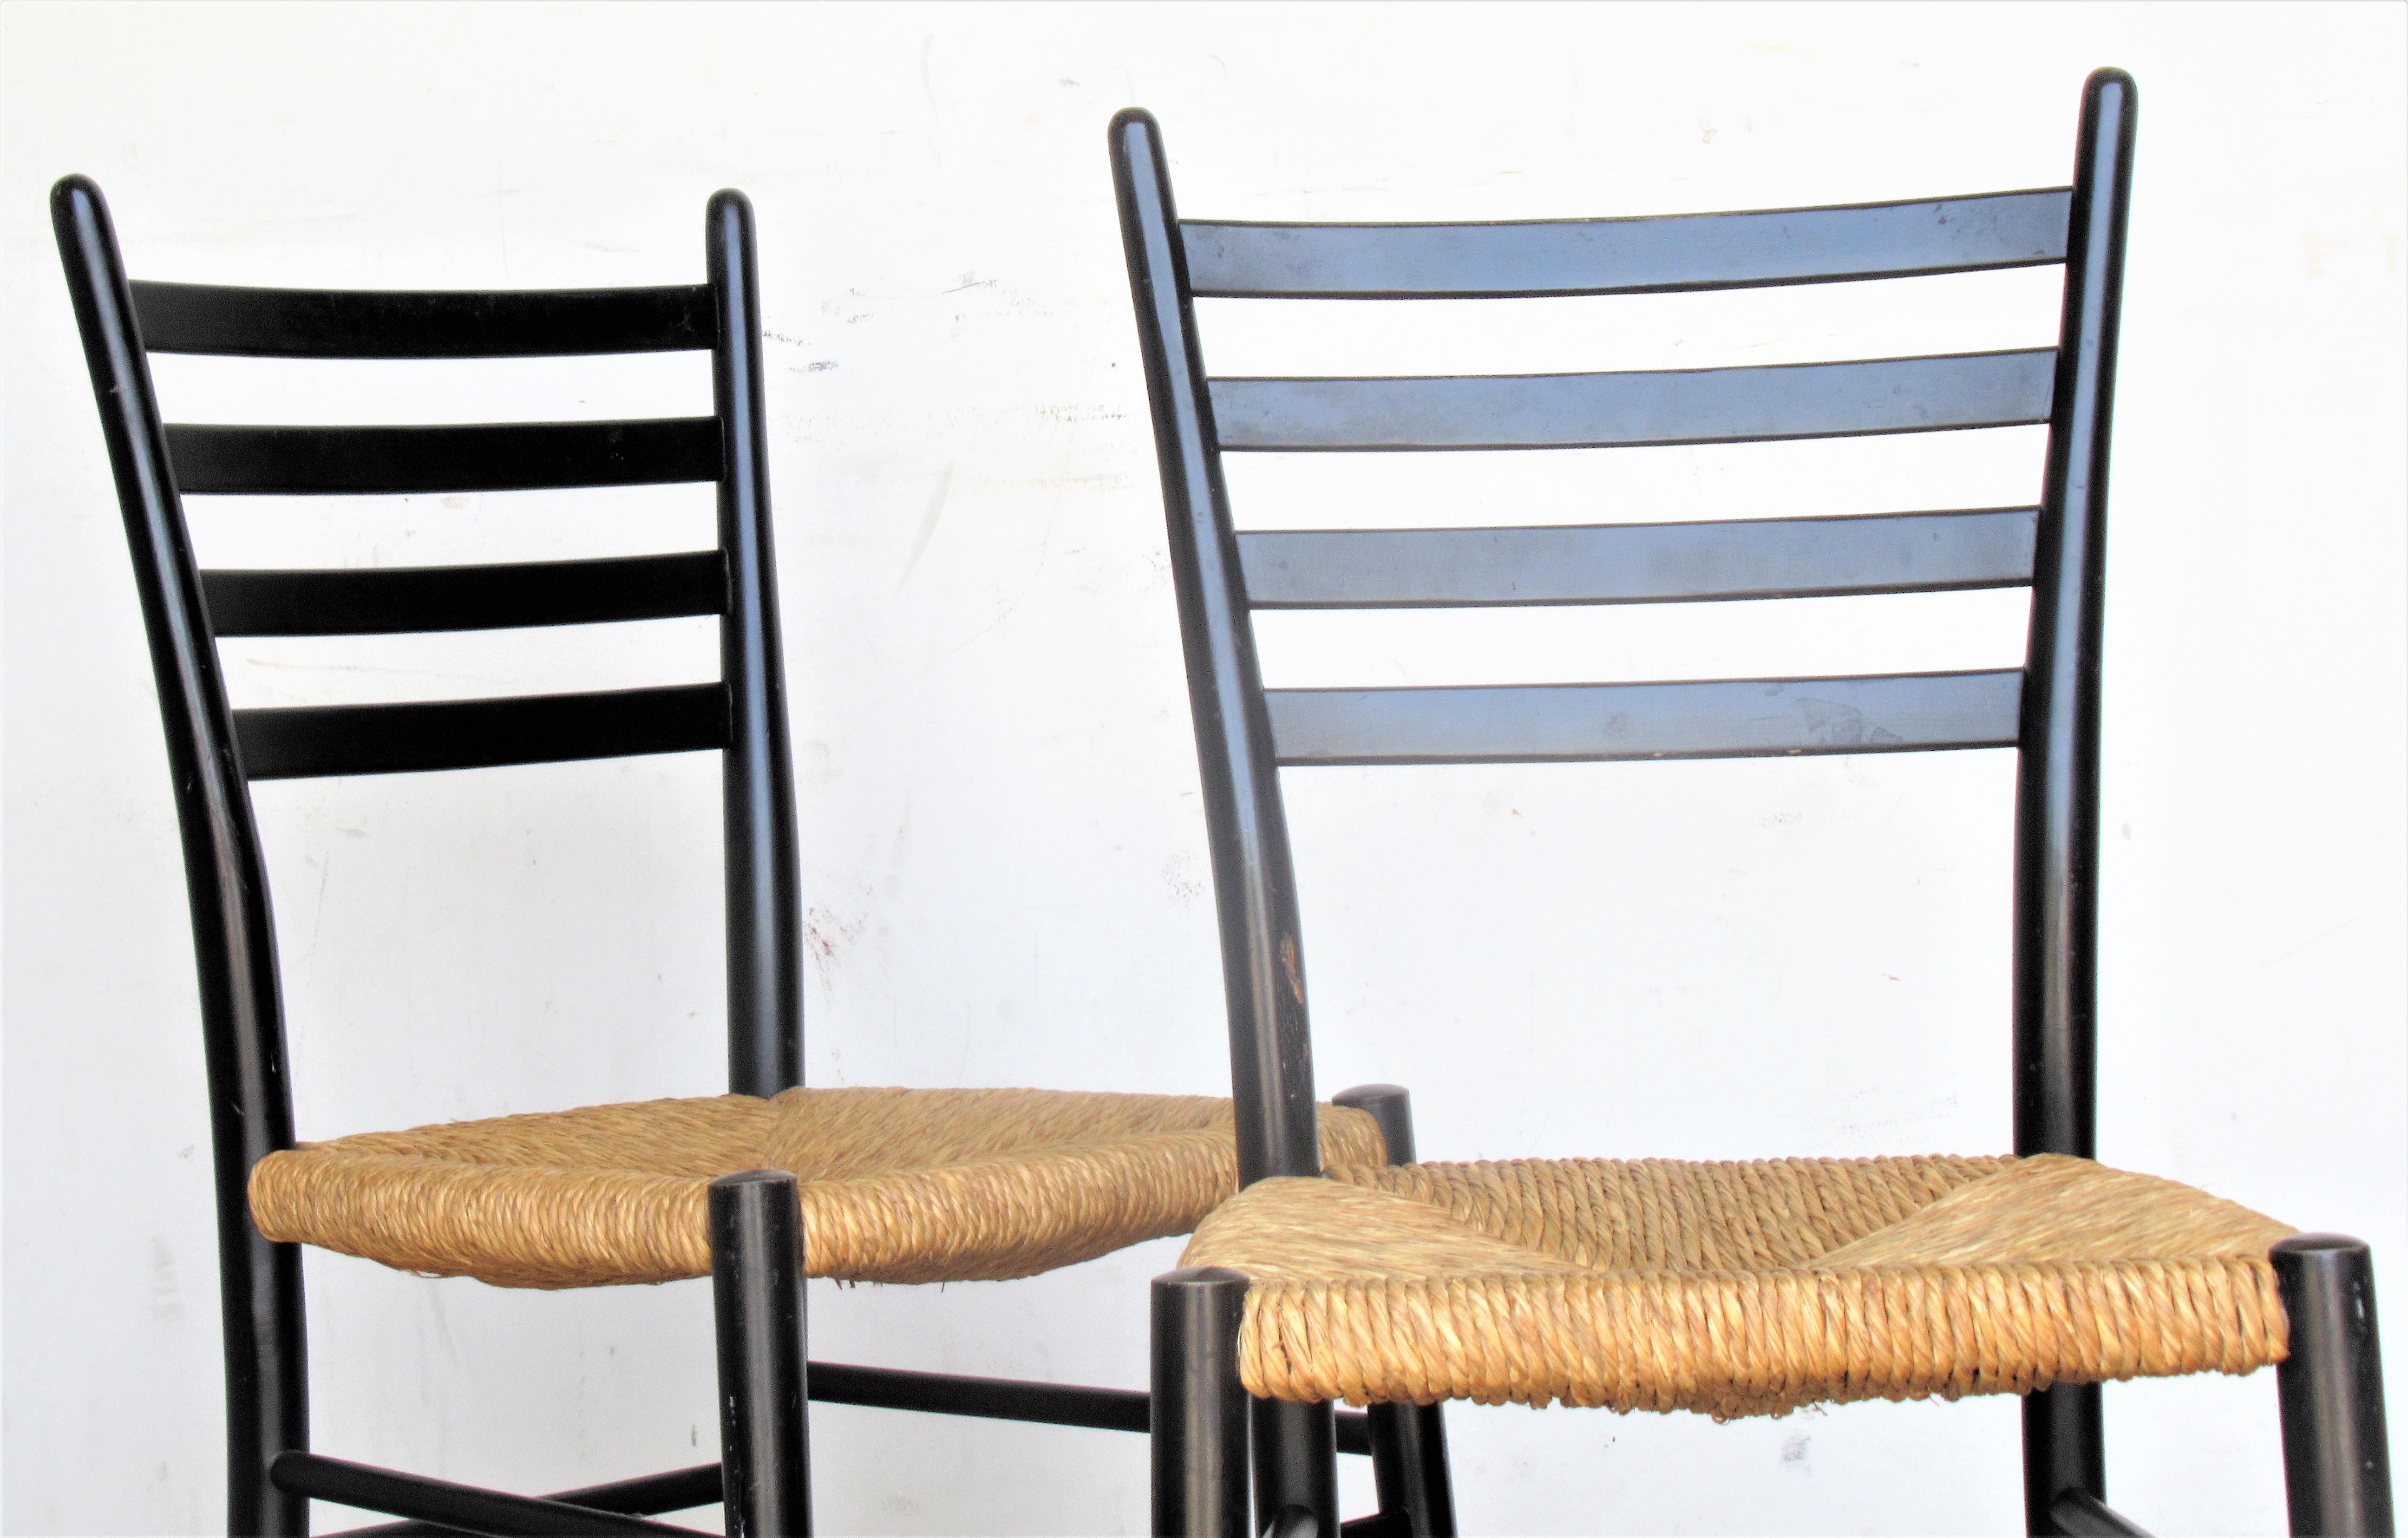 Paire de chaises modernes italiennes des années 1950 à dossier en échelle dans le style de Gio Ponti, avec les sièges d'origine en jonc naturel tressé et la finition d'usine laquée noire. Regardez toutes les photos et lisez le rapport d'état dans la